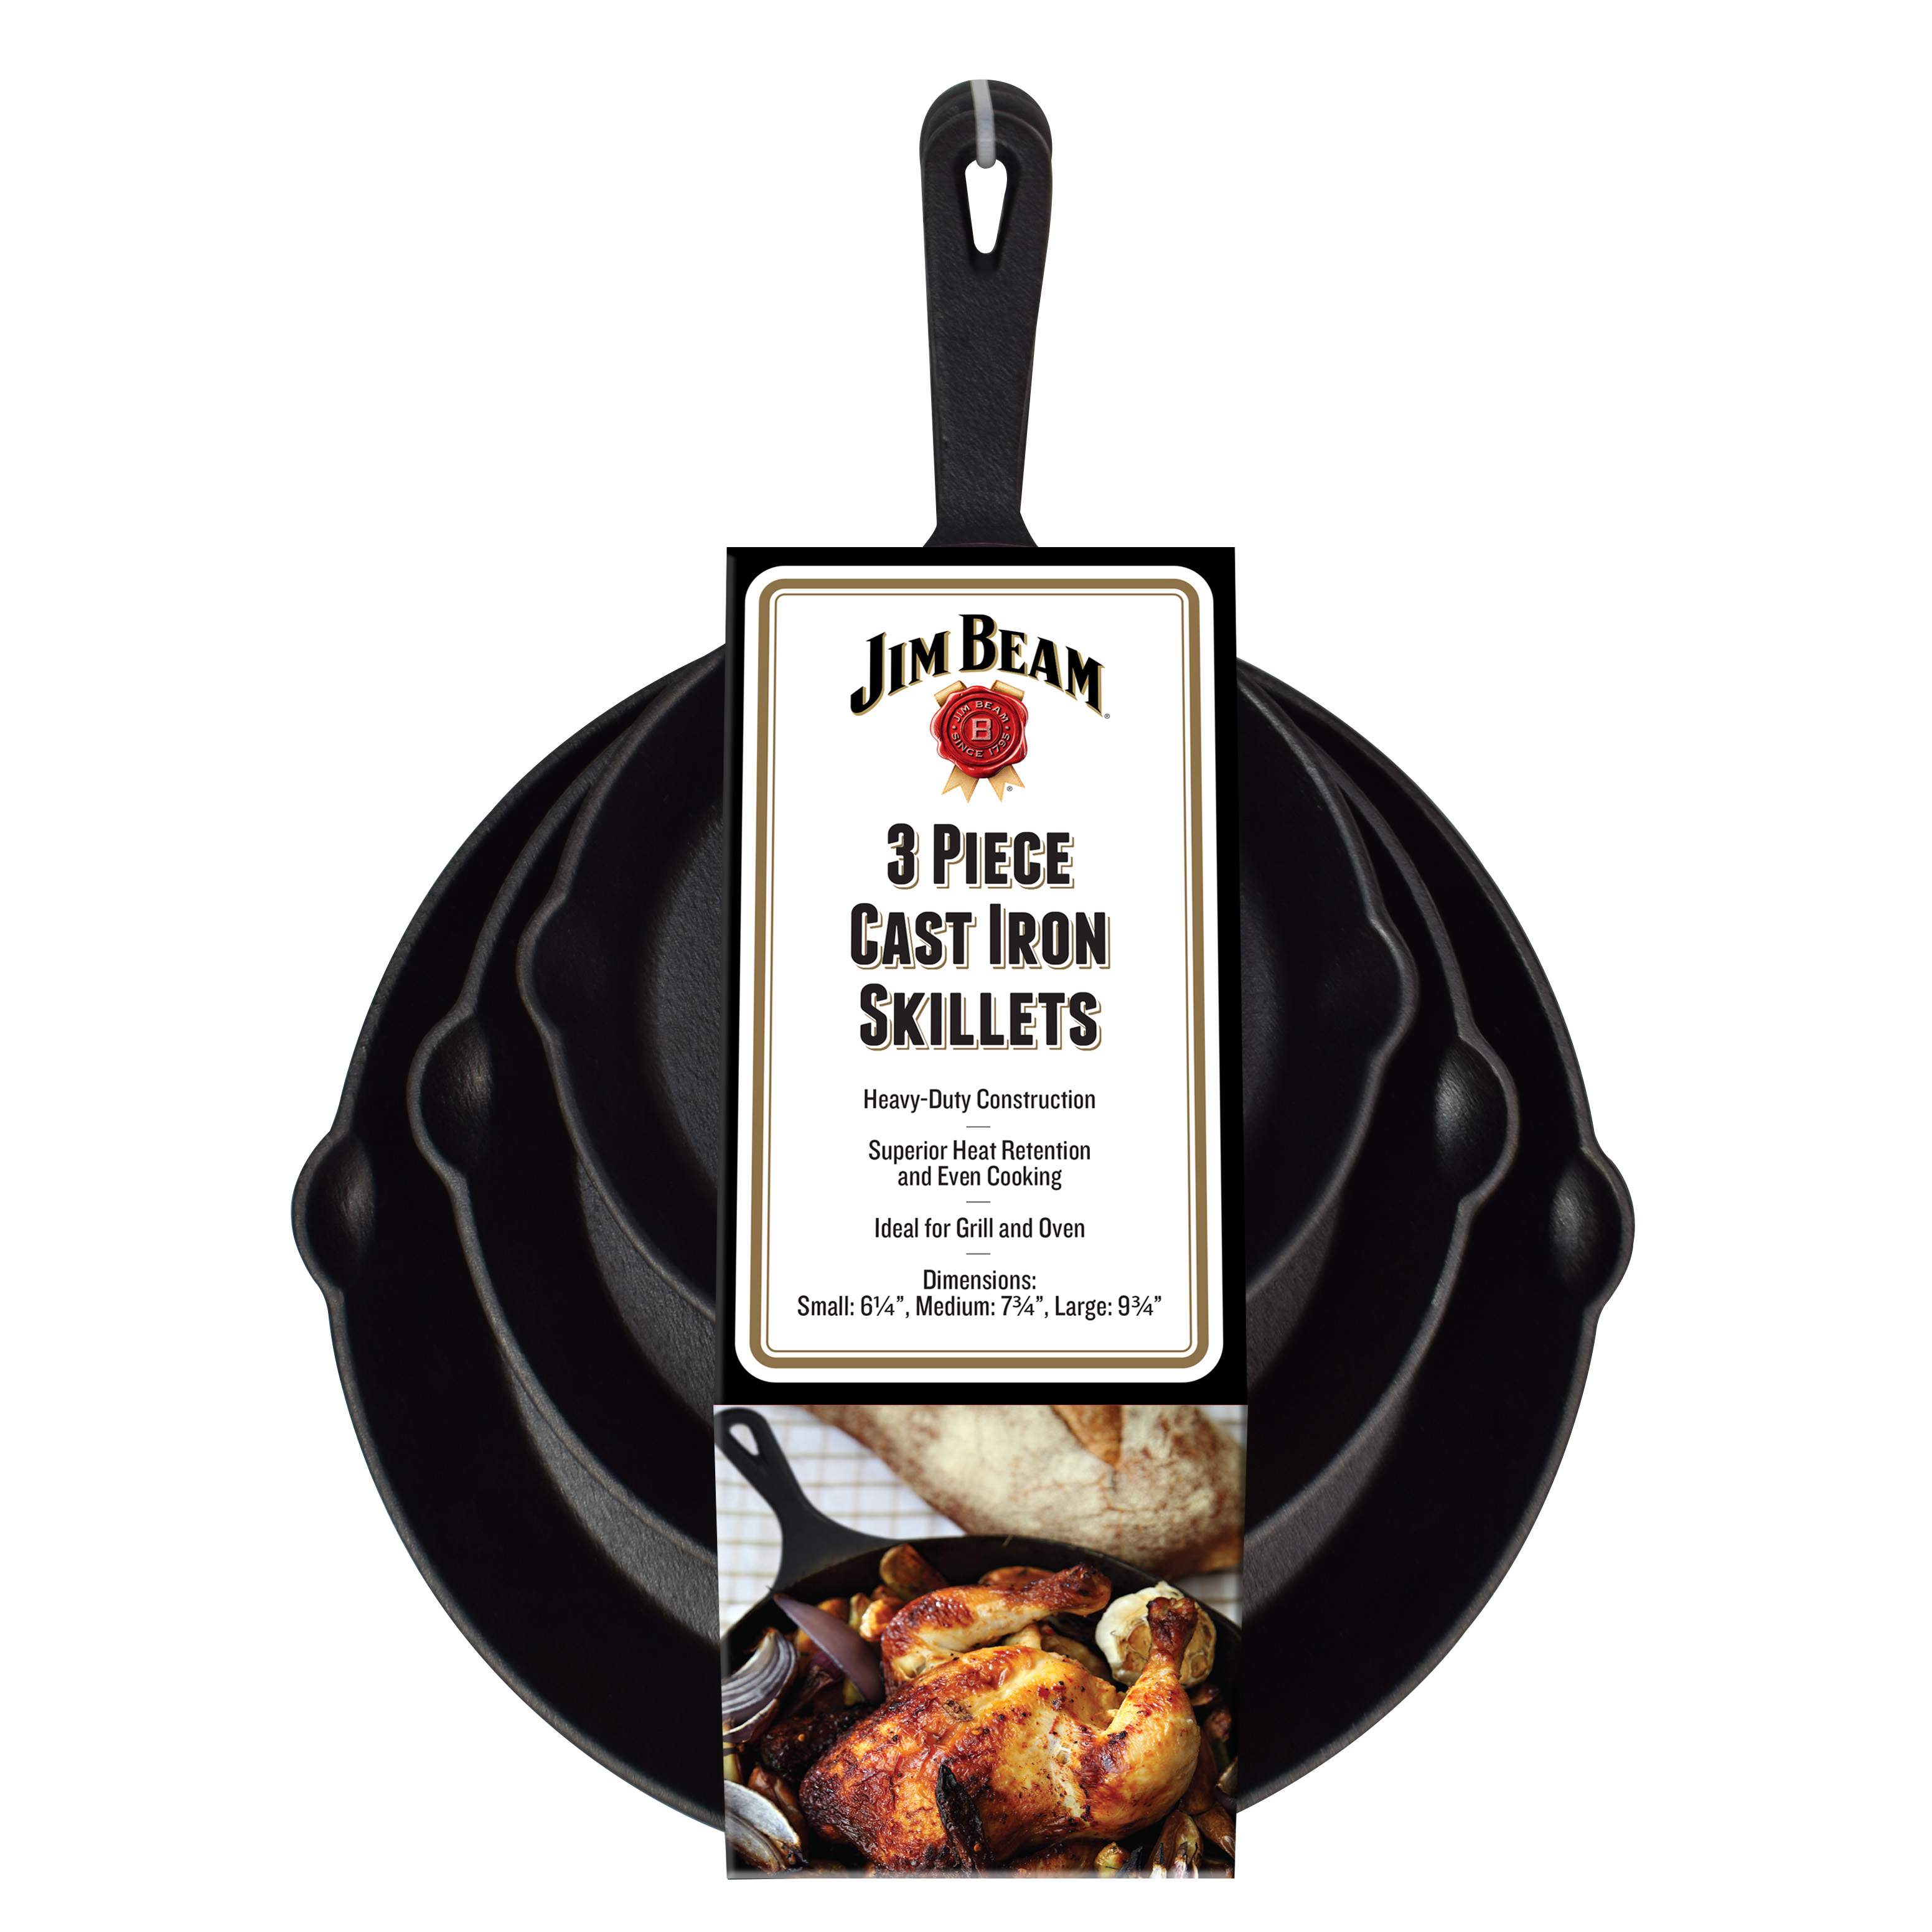 Jim Beam JB0195, Gusseiserne Bratpfanne 3er Set mit Ausgießer, BBQ Grillpfannen aus Gusseisen, für Grill und Ofen, induktionsfähig, Wärmespeicherung, Durchmesser 16cm, 20cm, 25cm